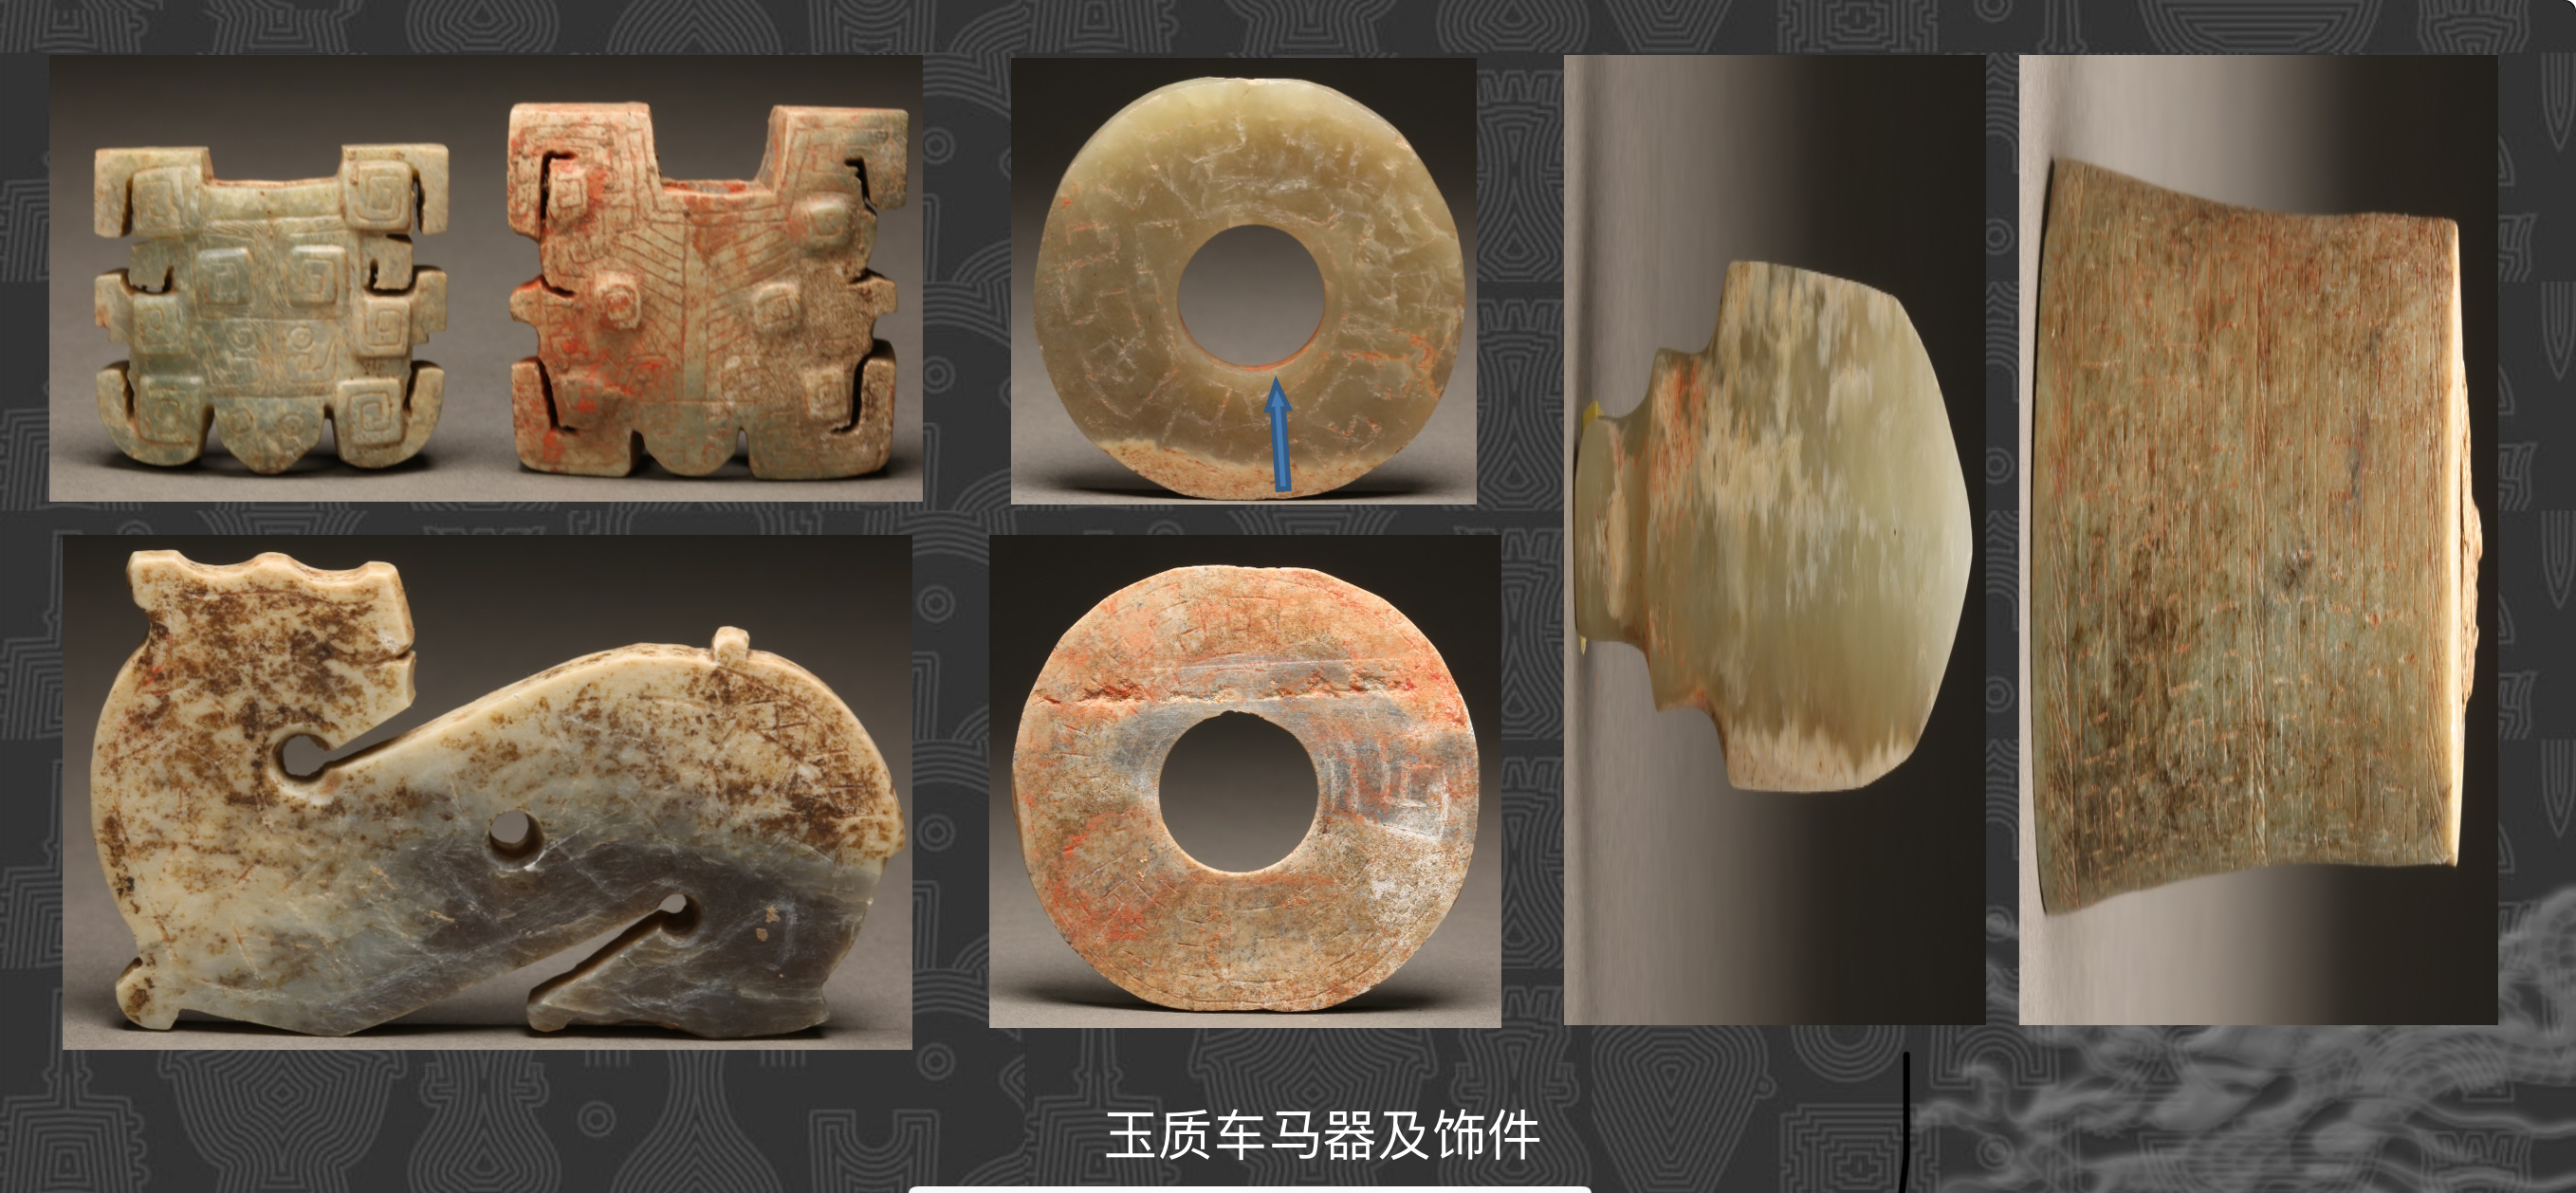 跨越千年的历史见证！国家文物局发布《考古中国》重大项目进展